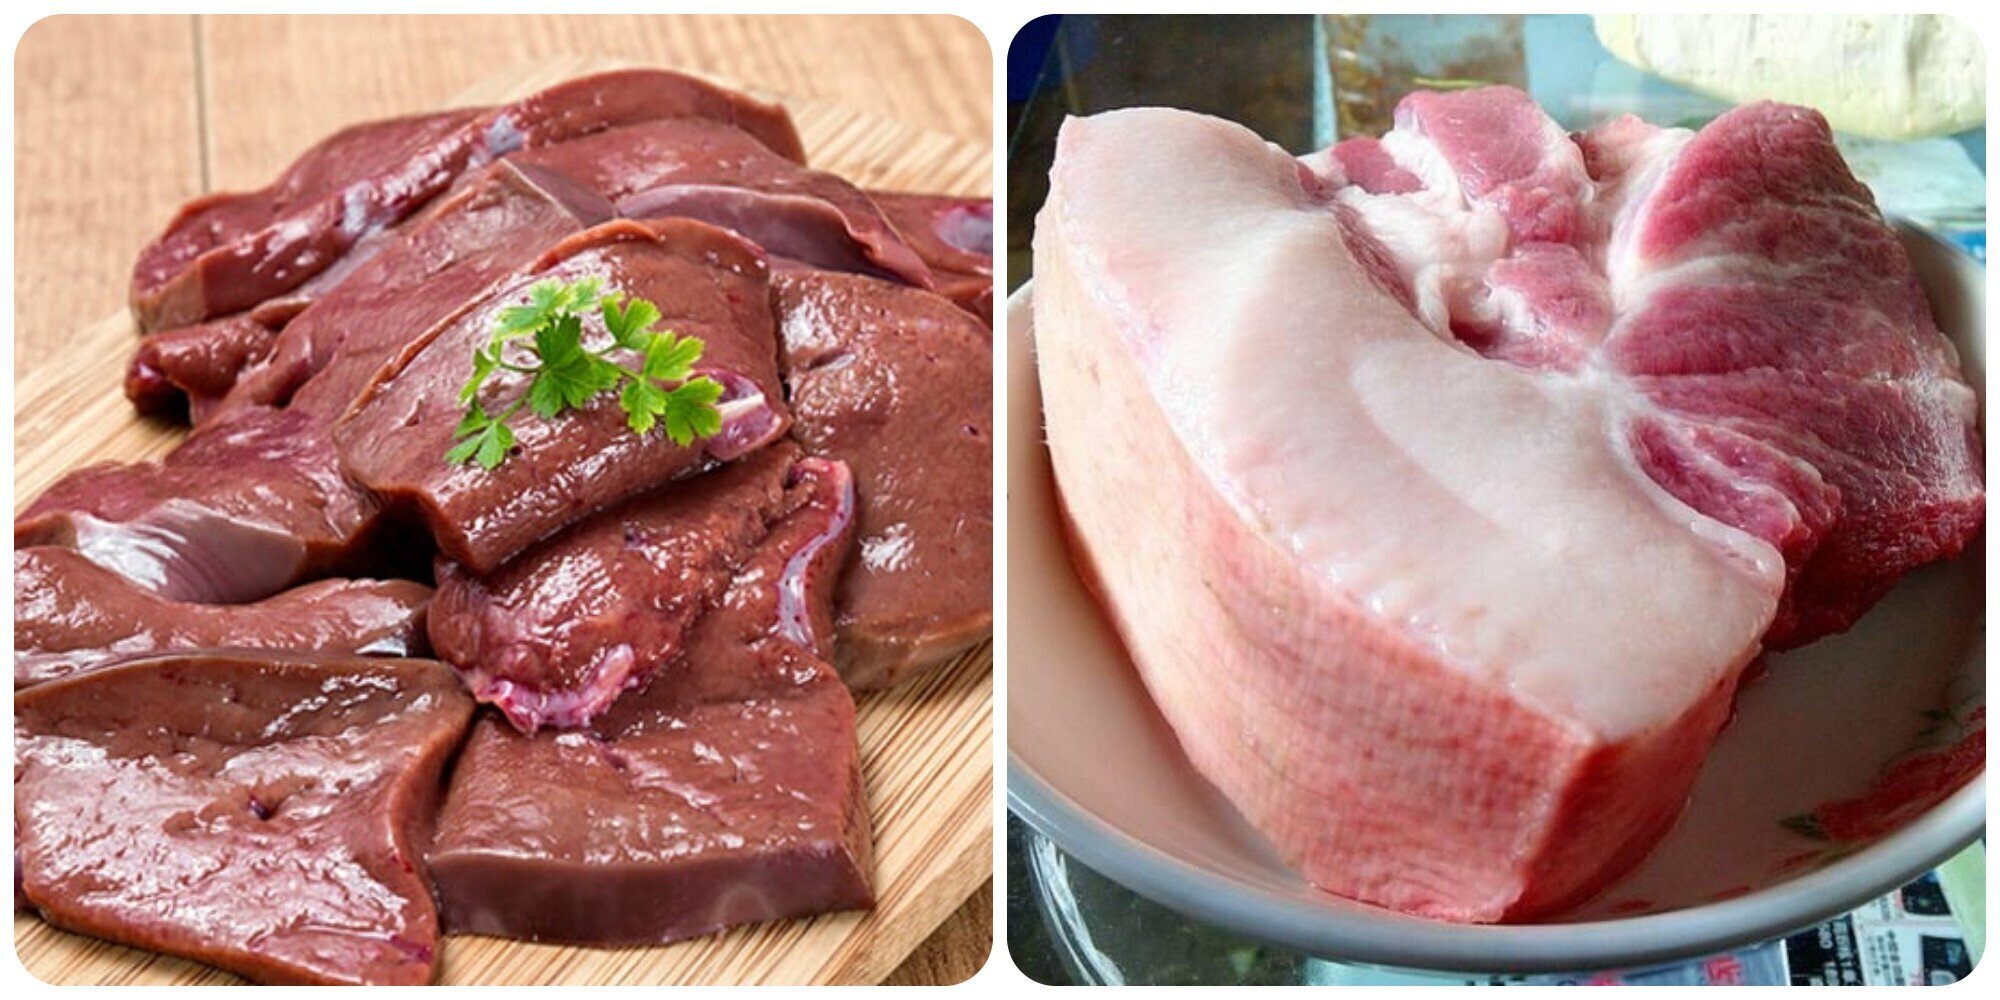 Gan và phần thịt cổ lợn được các chuyên gia khuyến cáo không nên ăn nhiều